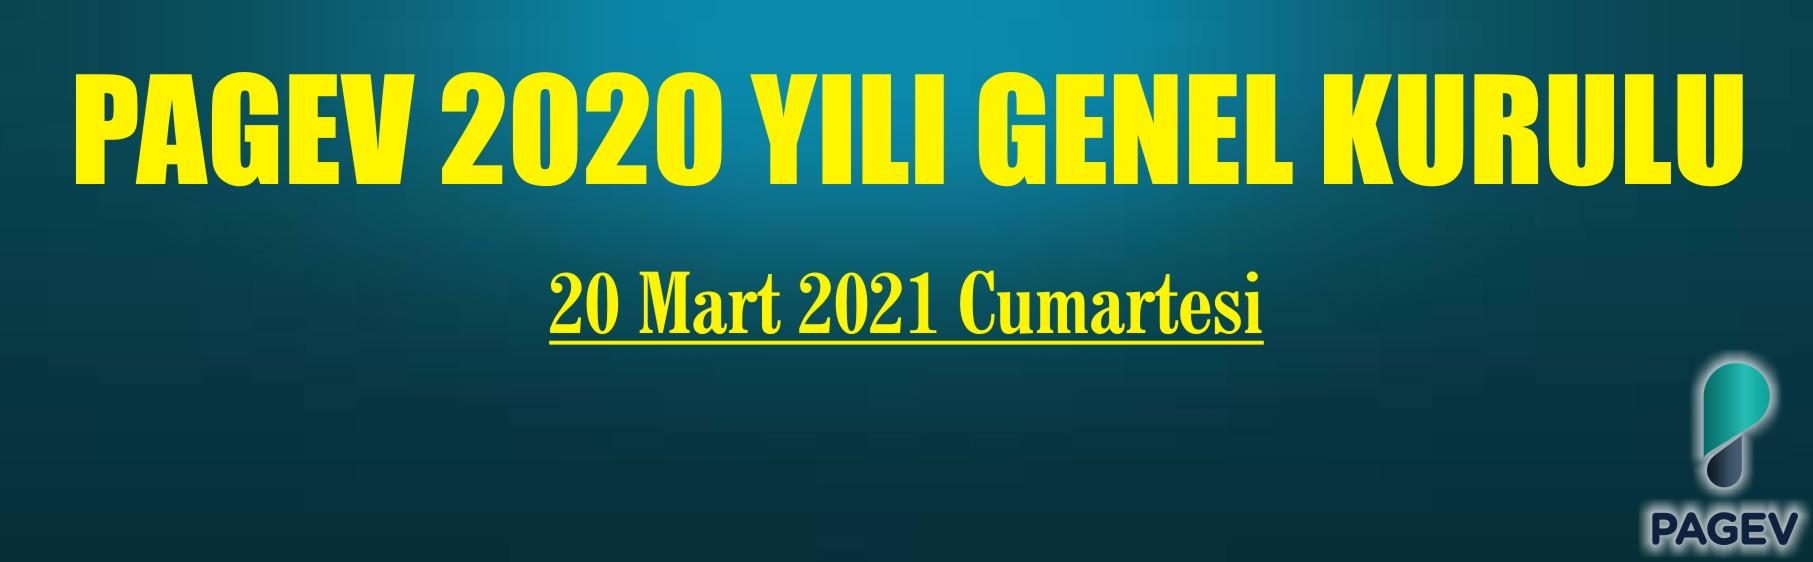 PAGEV Genel Kurulu 20 Mart 2021 Cumartesi günü yapılacak….